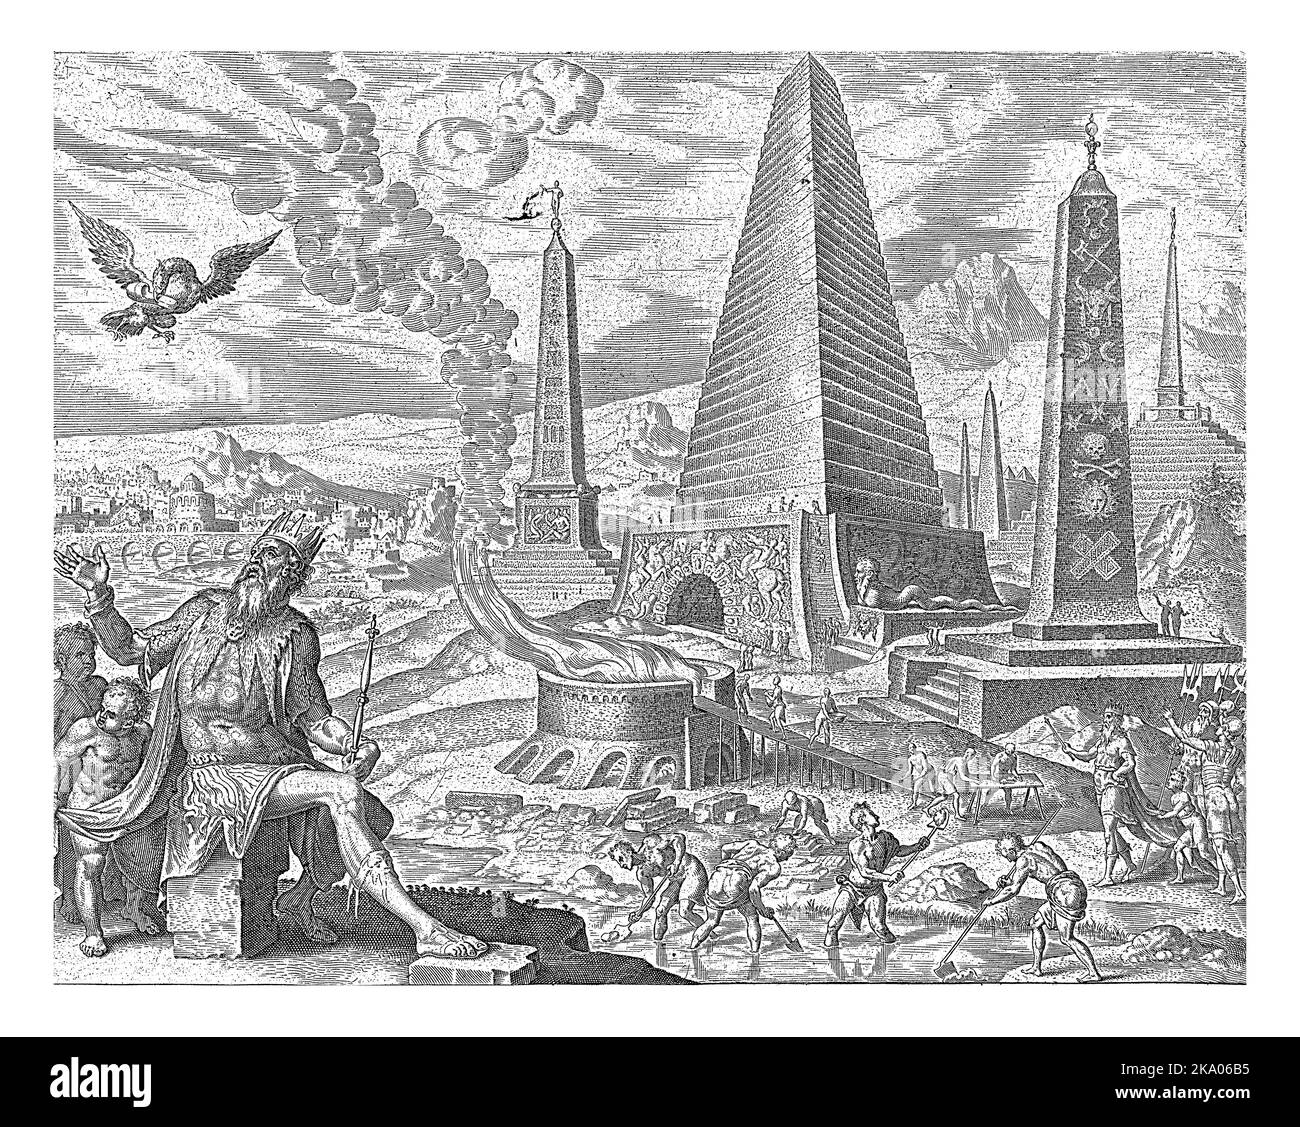 Im Hintergrund ägyptische Pyramiden und Obelisken. Sklaven schöpfen Ton aus dem Fluss, der dann zu Ziegeln für den Bau in einem feurigen Furnac gebacken wird Stockfoto